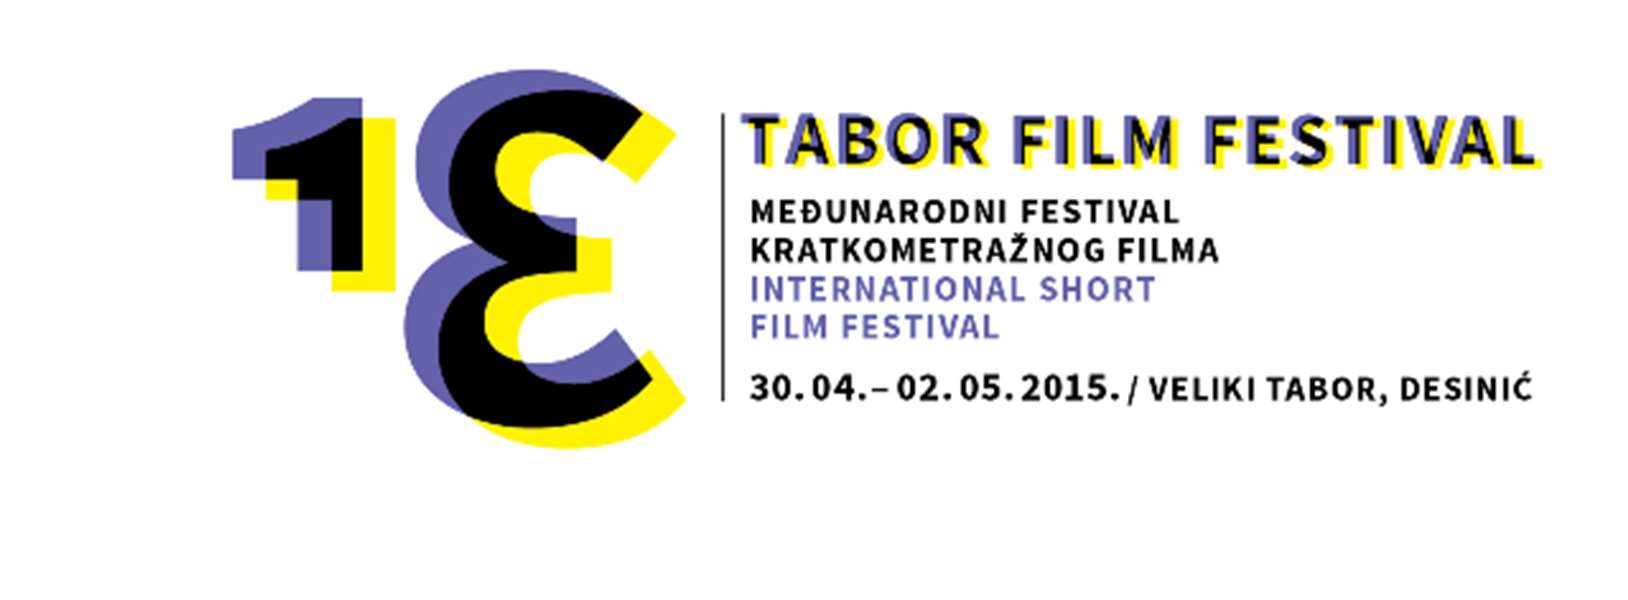 tabor film festival